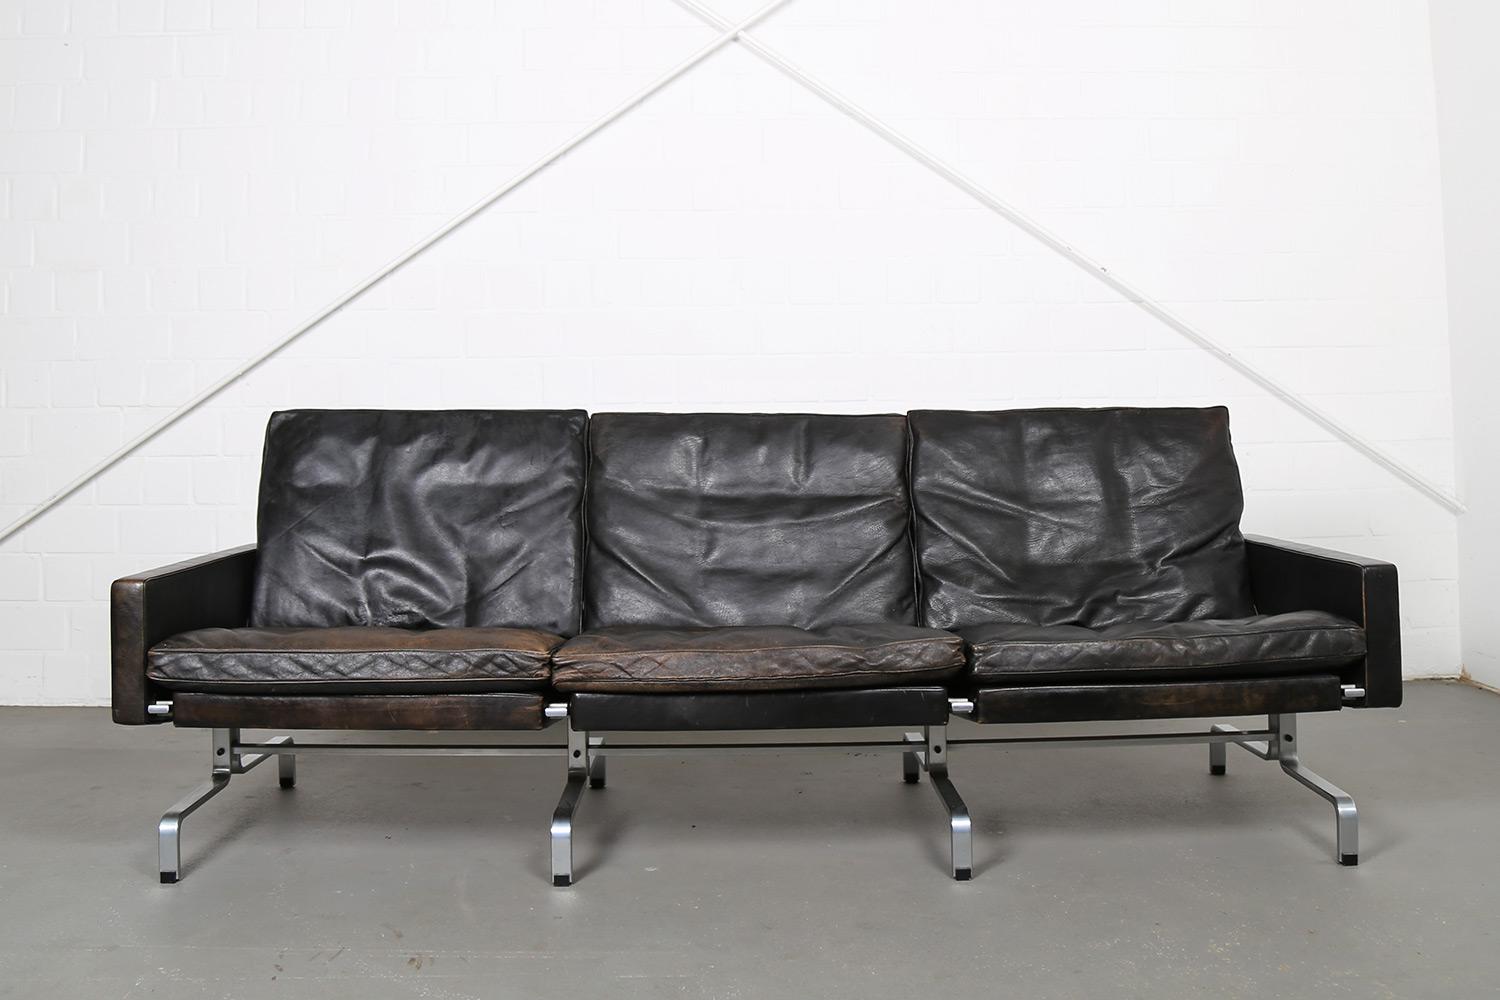 Schönes, schwarzes Sofa, entworfen von Poul Kjærholm für E. Kold Christensen in Dänemark, 1958. Das Modell trägt die Bezeichnung 